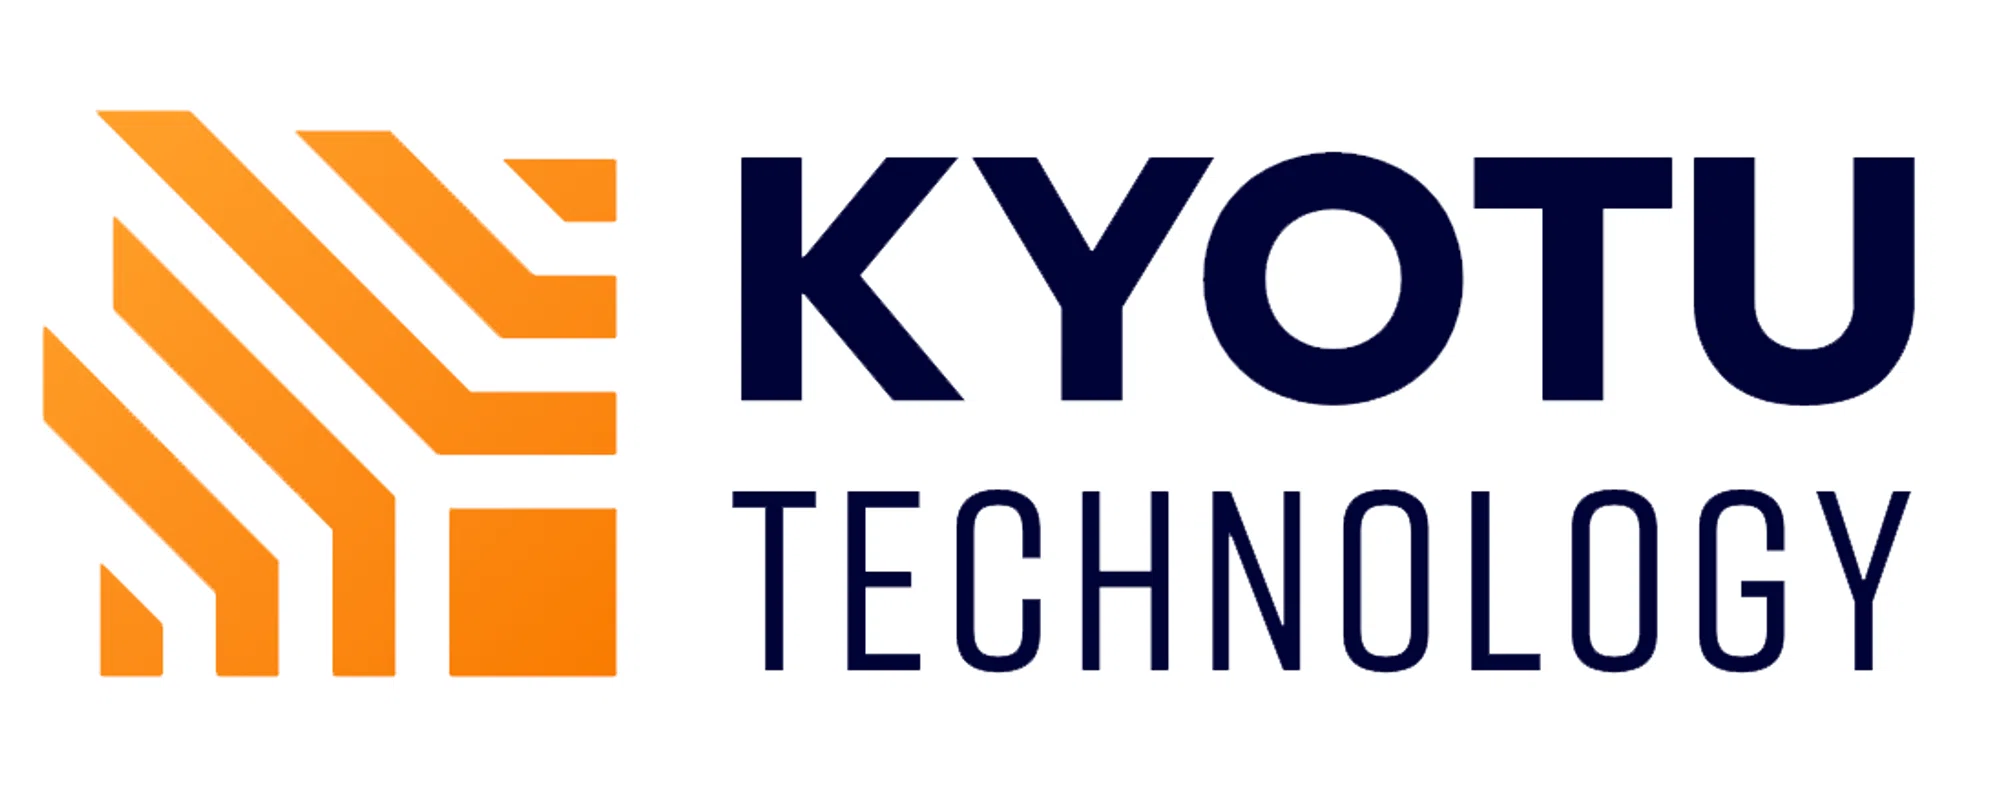 KYOTU Technology